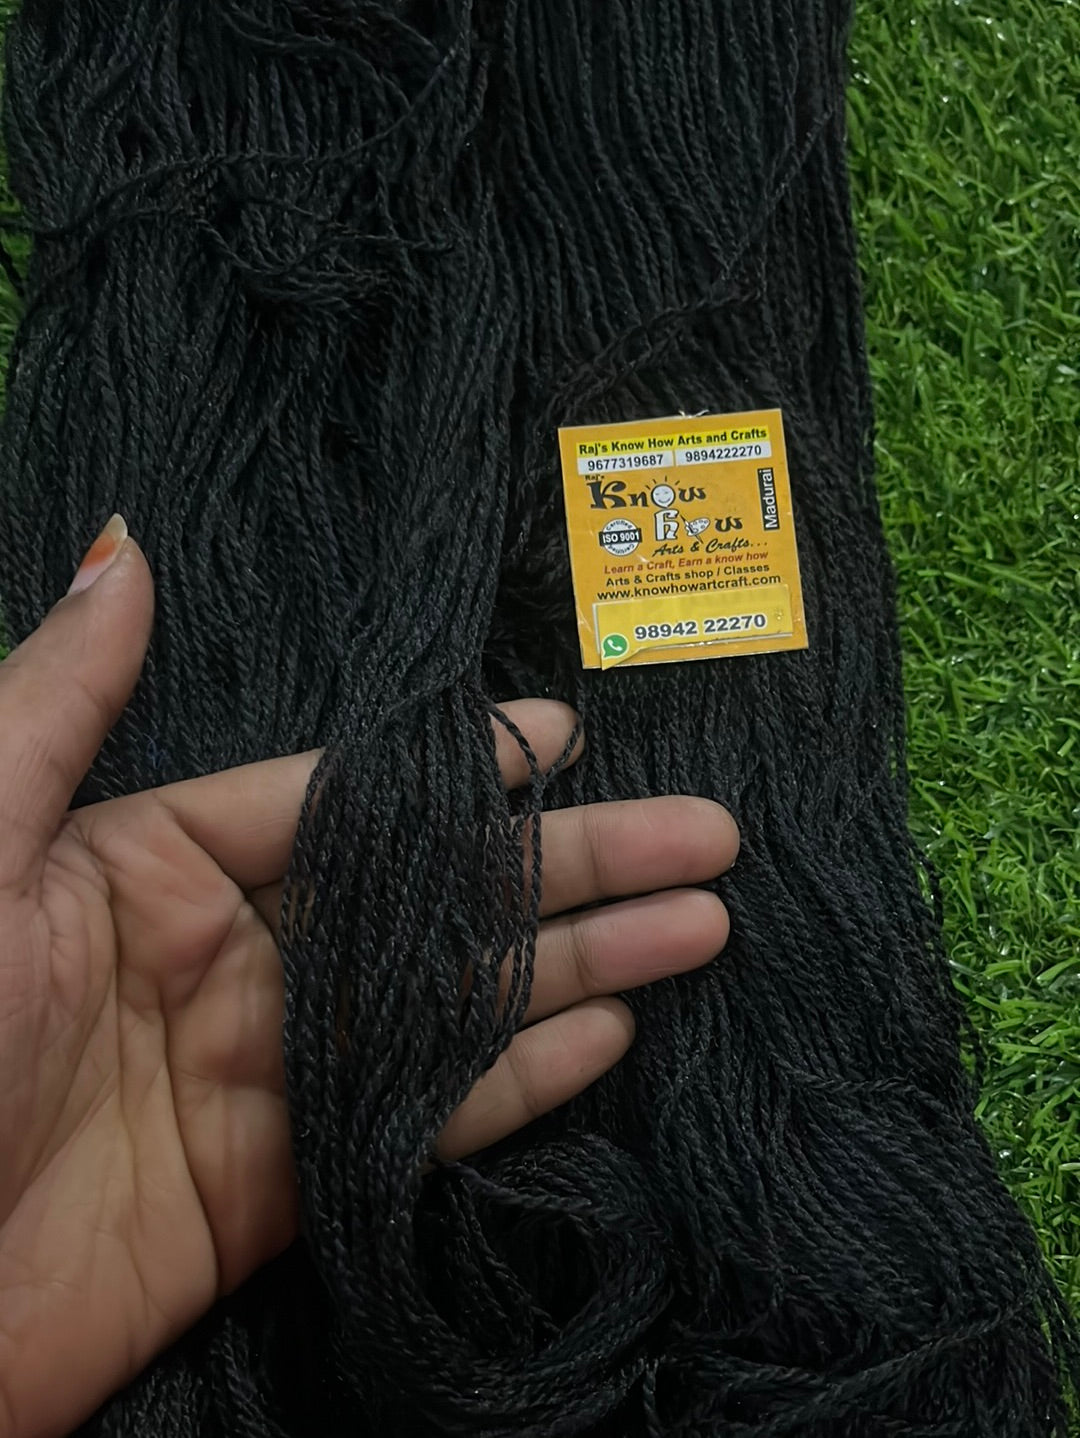 Black Woolen thread - 200 g